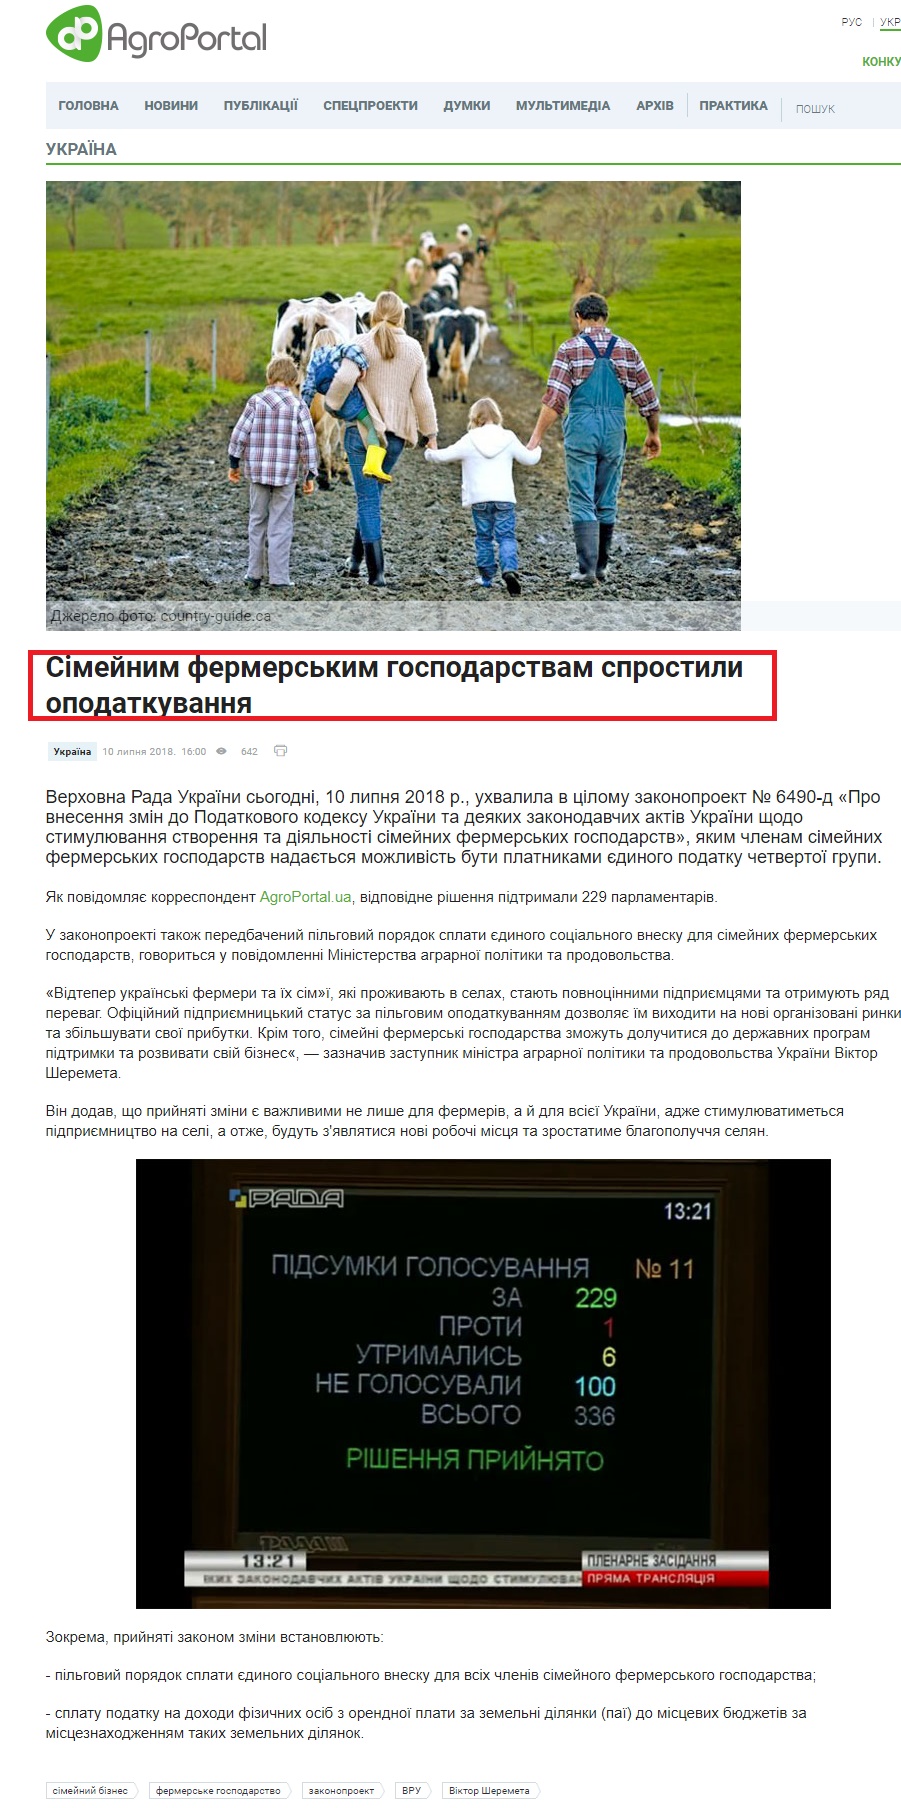 http://agroportal.ua/ua/news/ukraina/semeinym-fermerskim-khozyaistvam-uprostili-nalogooblozhenie/